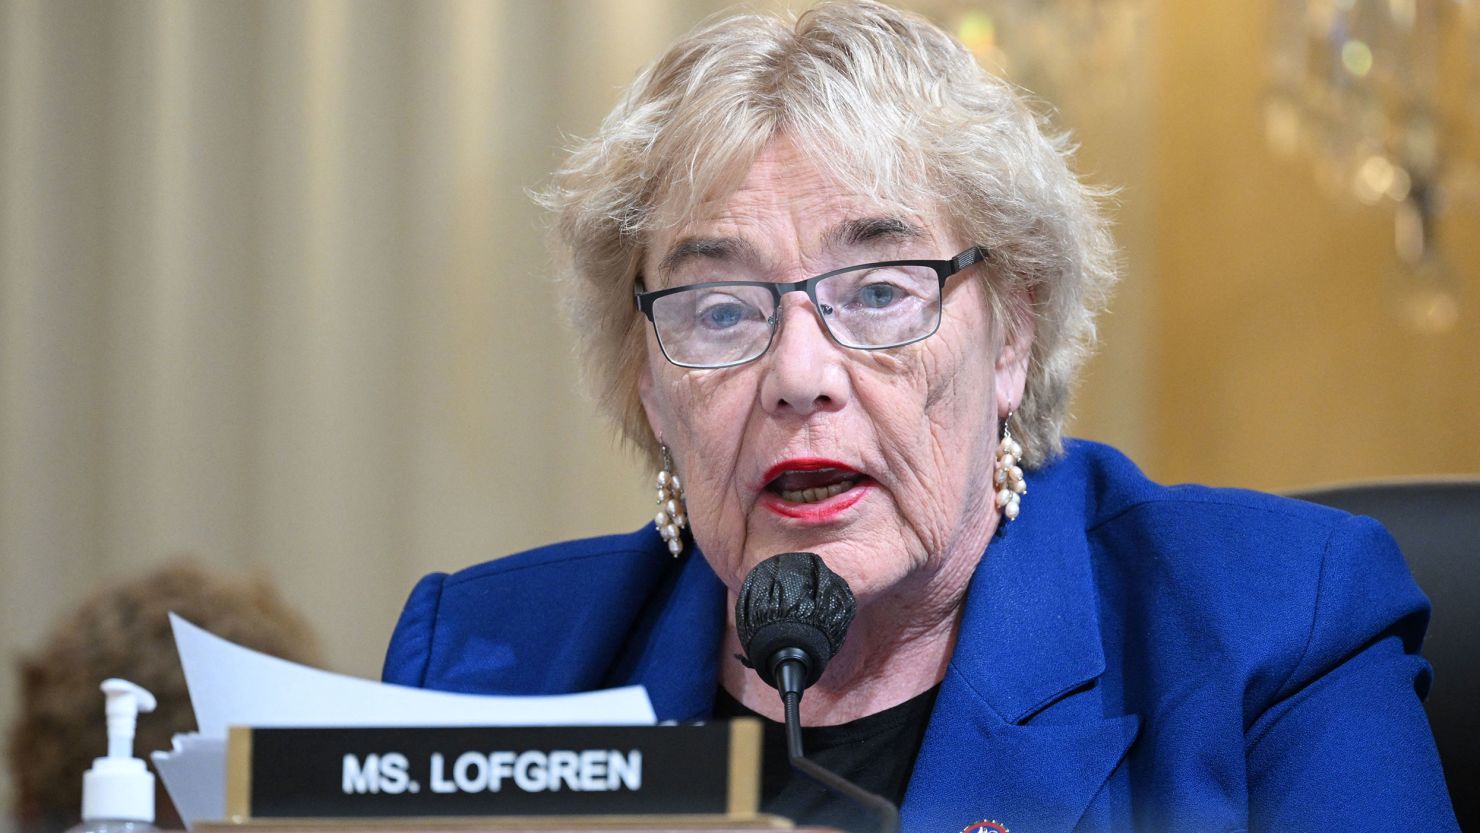 Rep. Zoe Lofgren speaks on Capitol Hill on October 13, 2022.